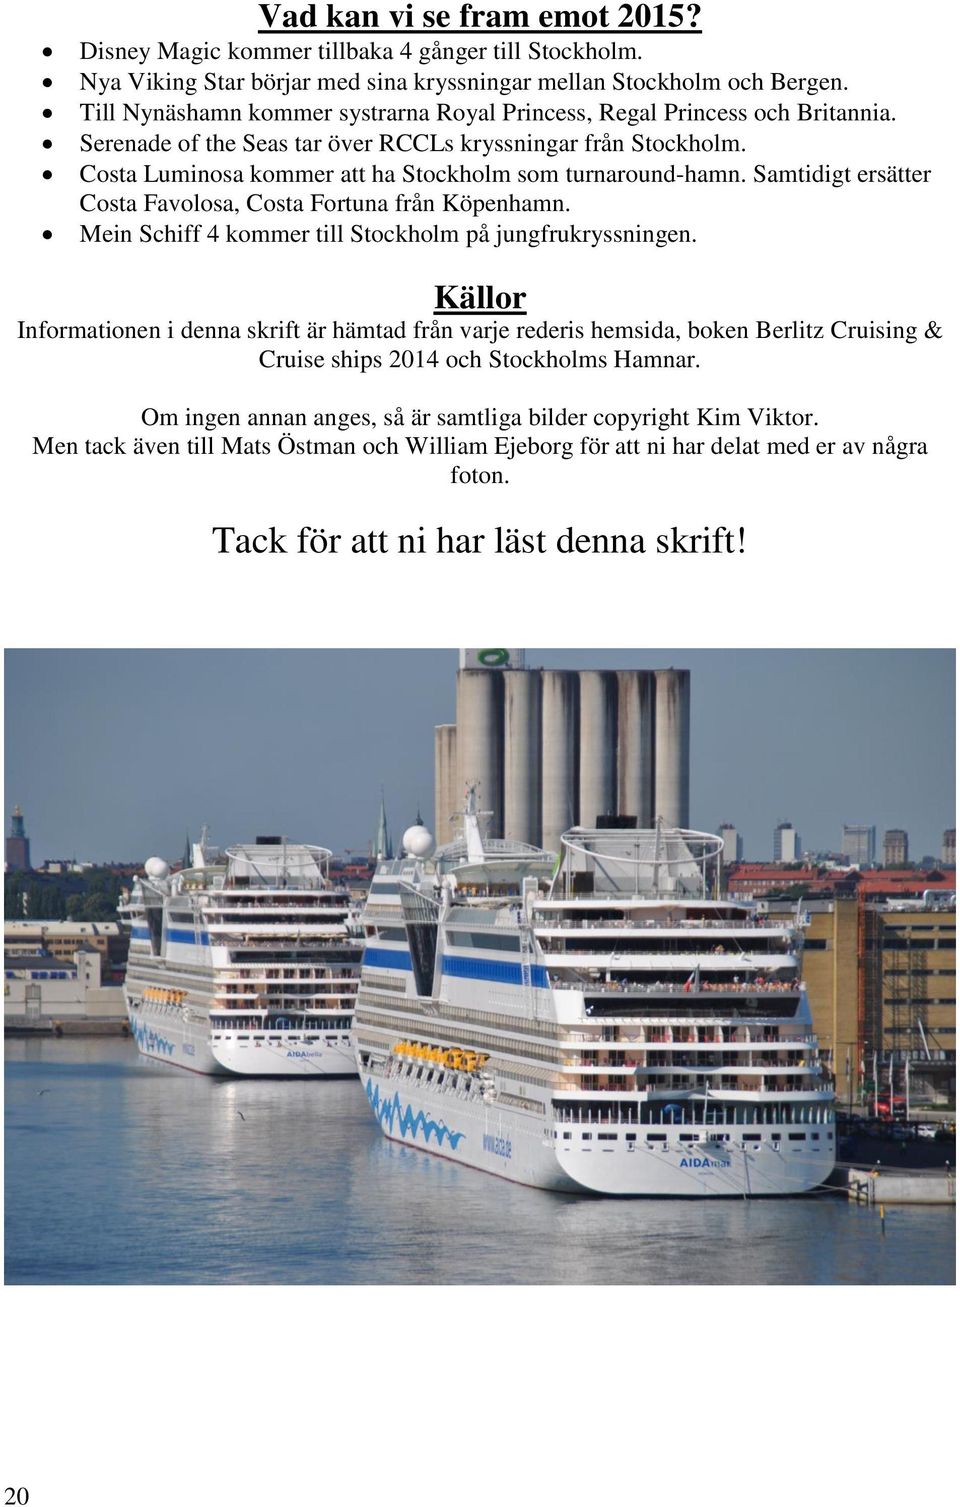 Costa Luminosa kommer att ha Stockholm som turnaround-hamn. Samtidigt ersätter Costa Favolosa, Costa Fortuna från Köpenhamn. Mein Schiff 4 kommer till Stockholm på jungfrukryssningen.